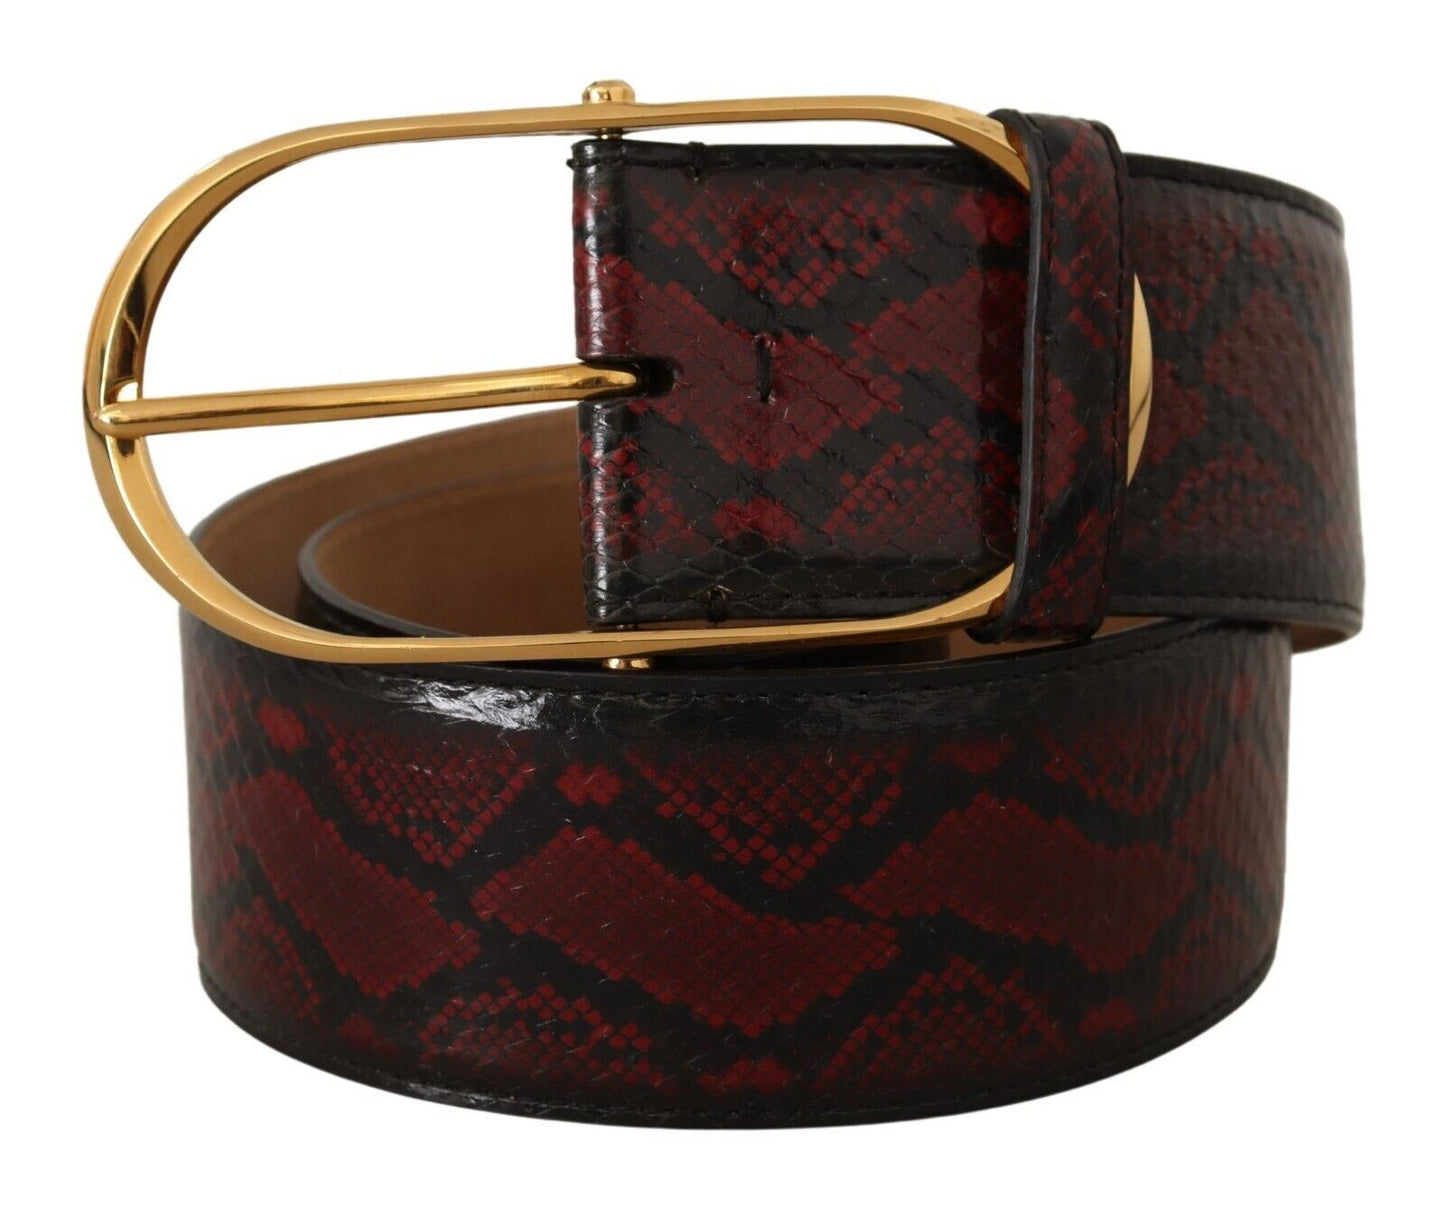 Dolce & Gabbana Red in pelle esotica in pelle ovale ovale cintura